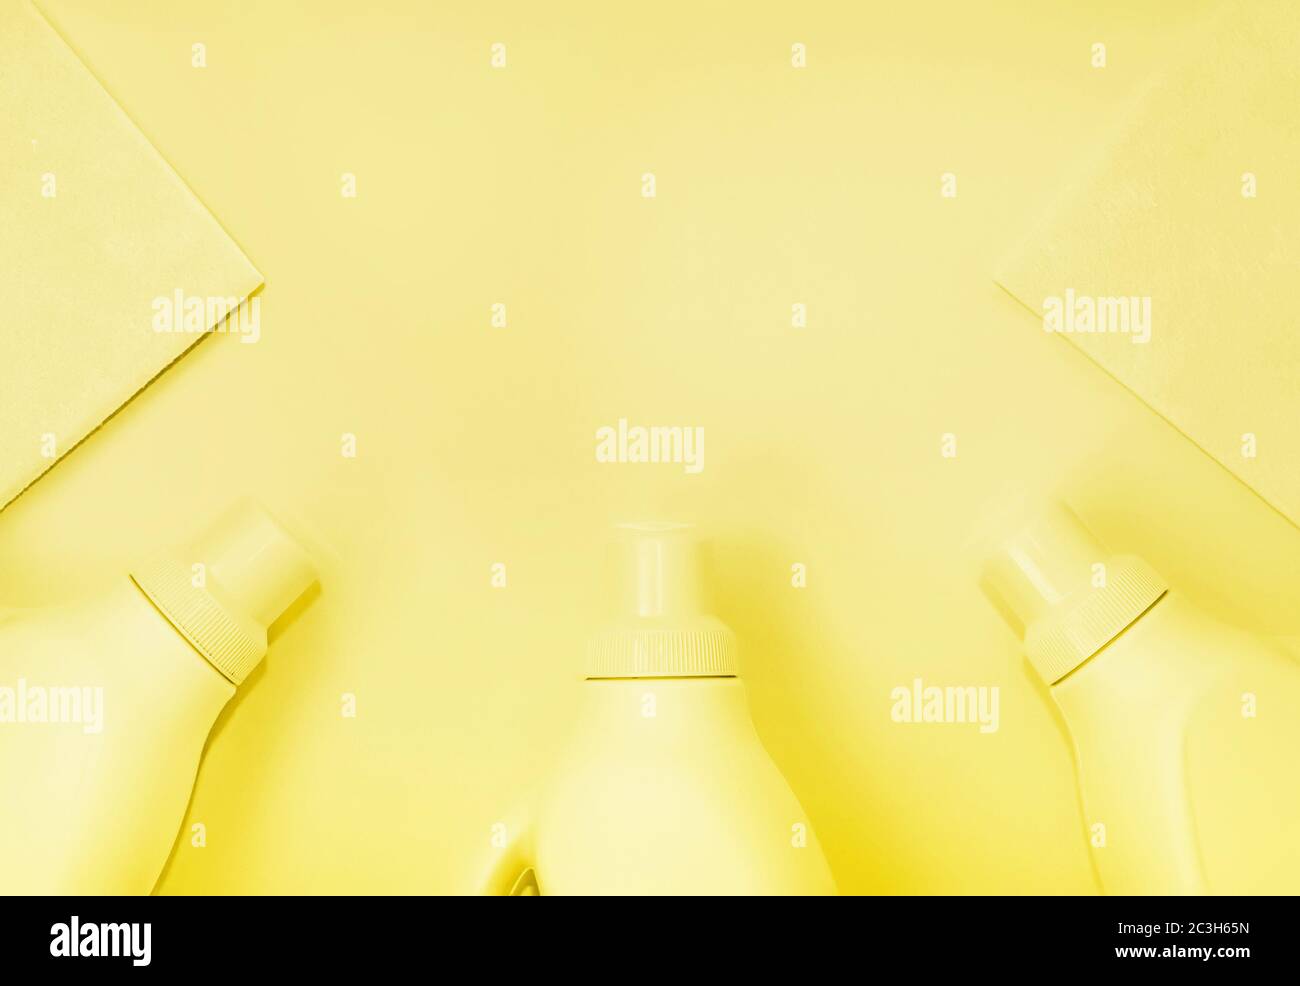 Bottiglie in plastica con prodotti chimici per la pulizia, stracci per la pulizia. Colorazione gialla, sfondo giallo. Concetto di pulizia Foto Stock